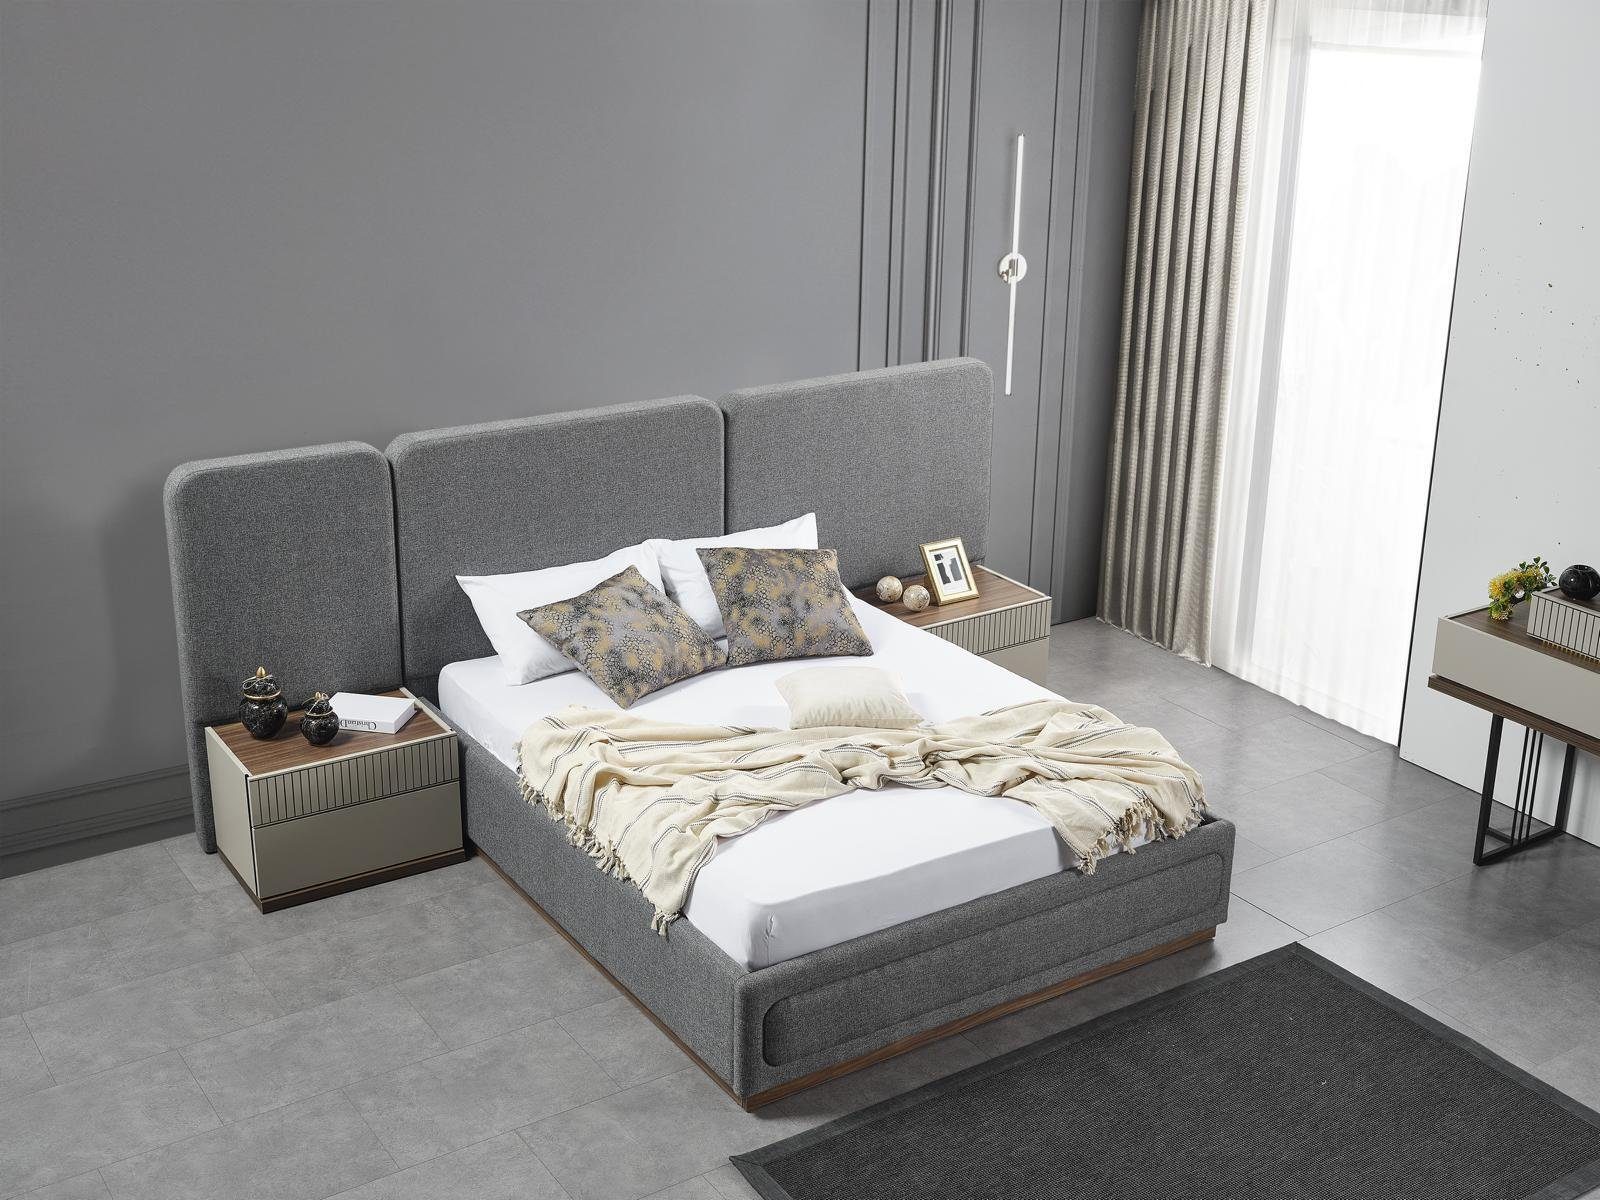 JVmoebel Bett Design Bett Stoff Luxus Betten Schlafzimmer Möbel Einrichtung, Made in Europa